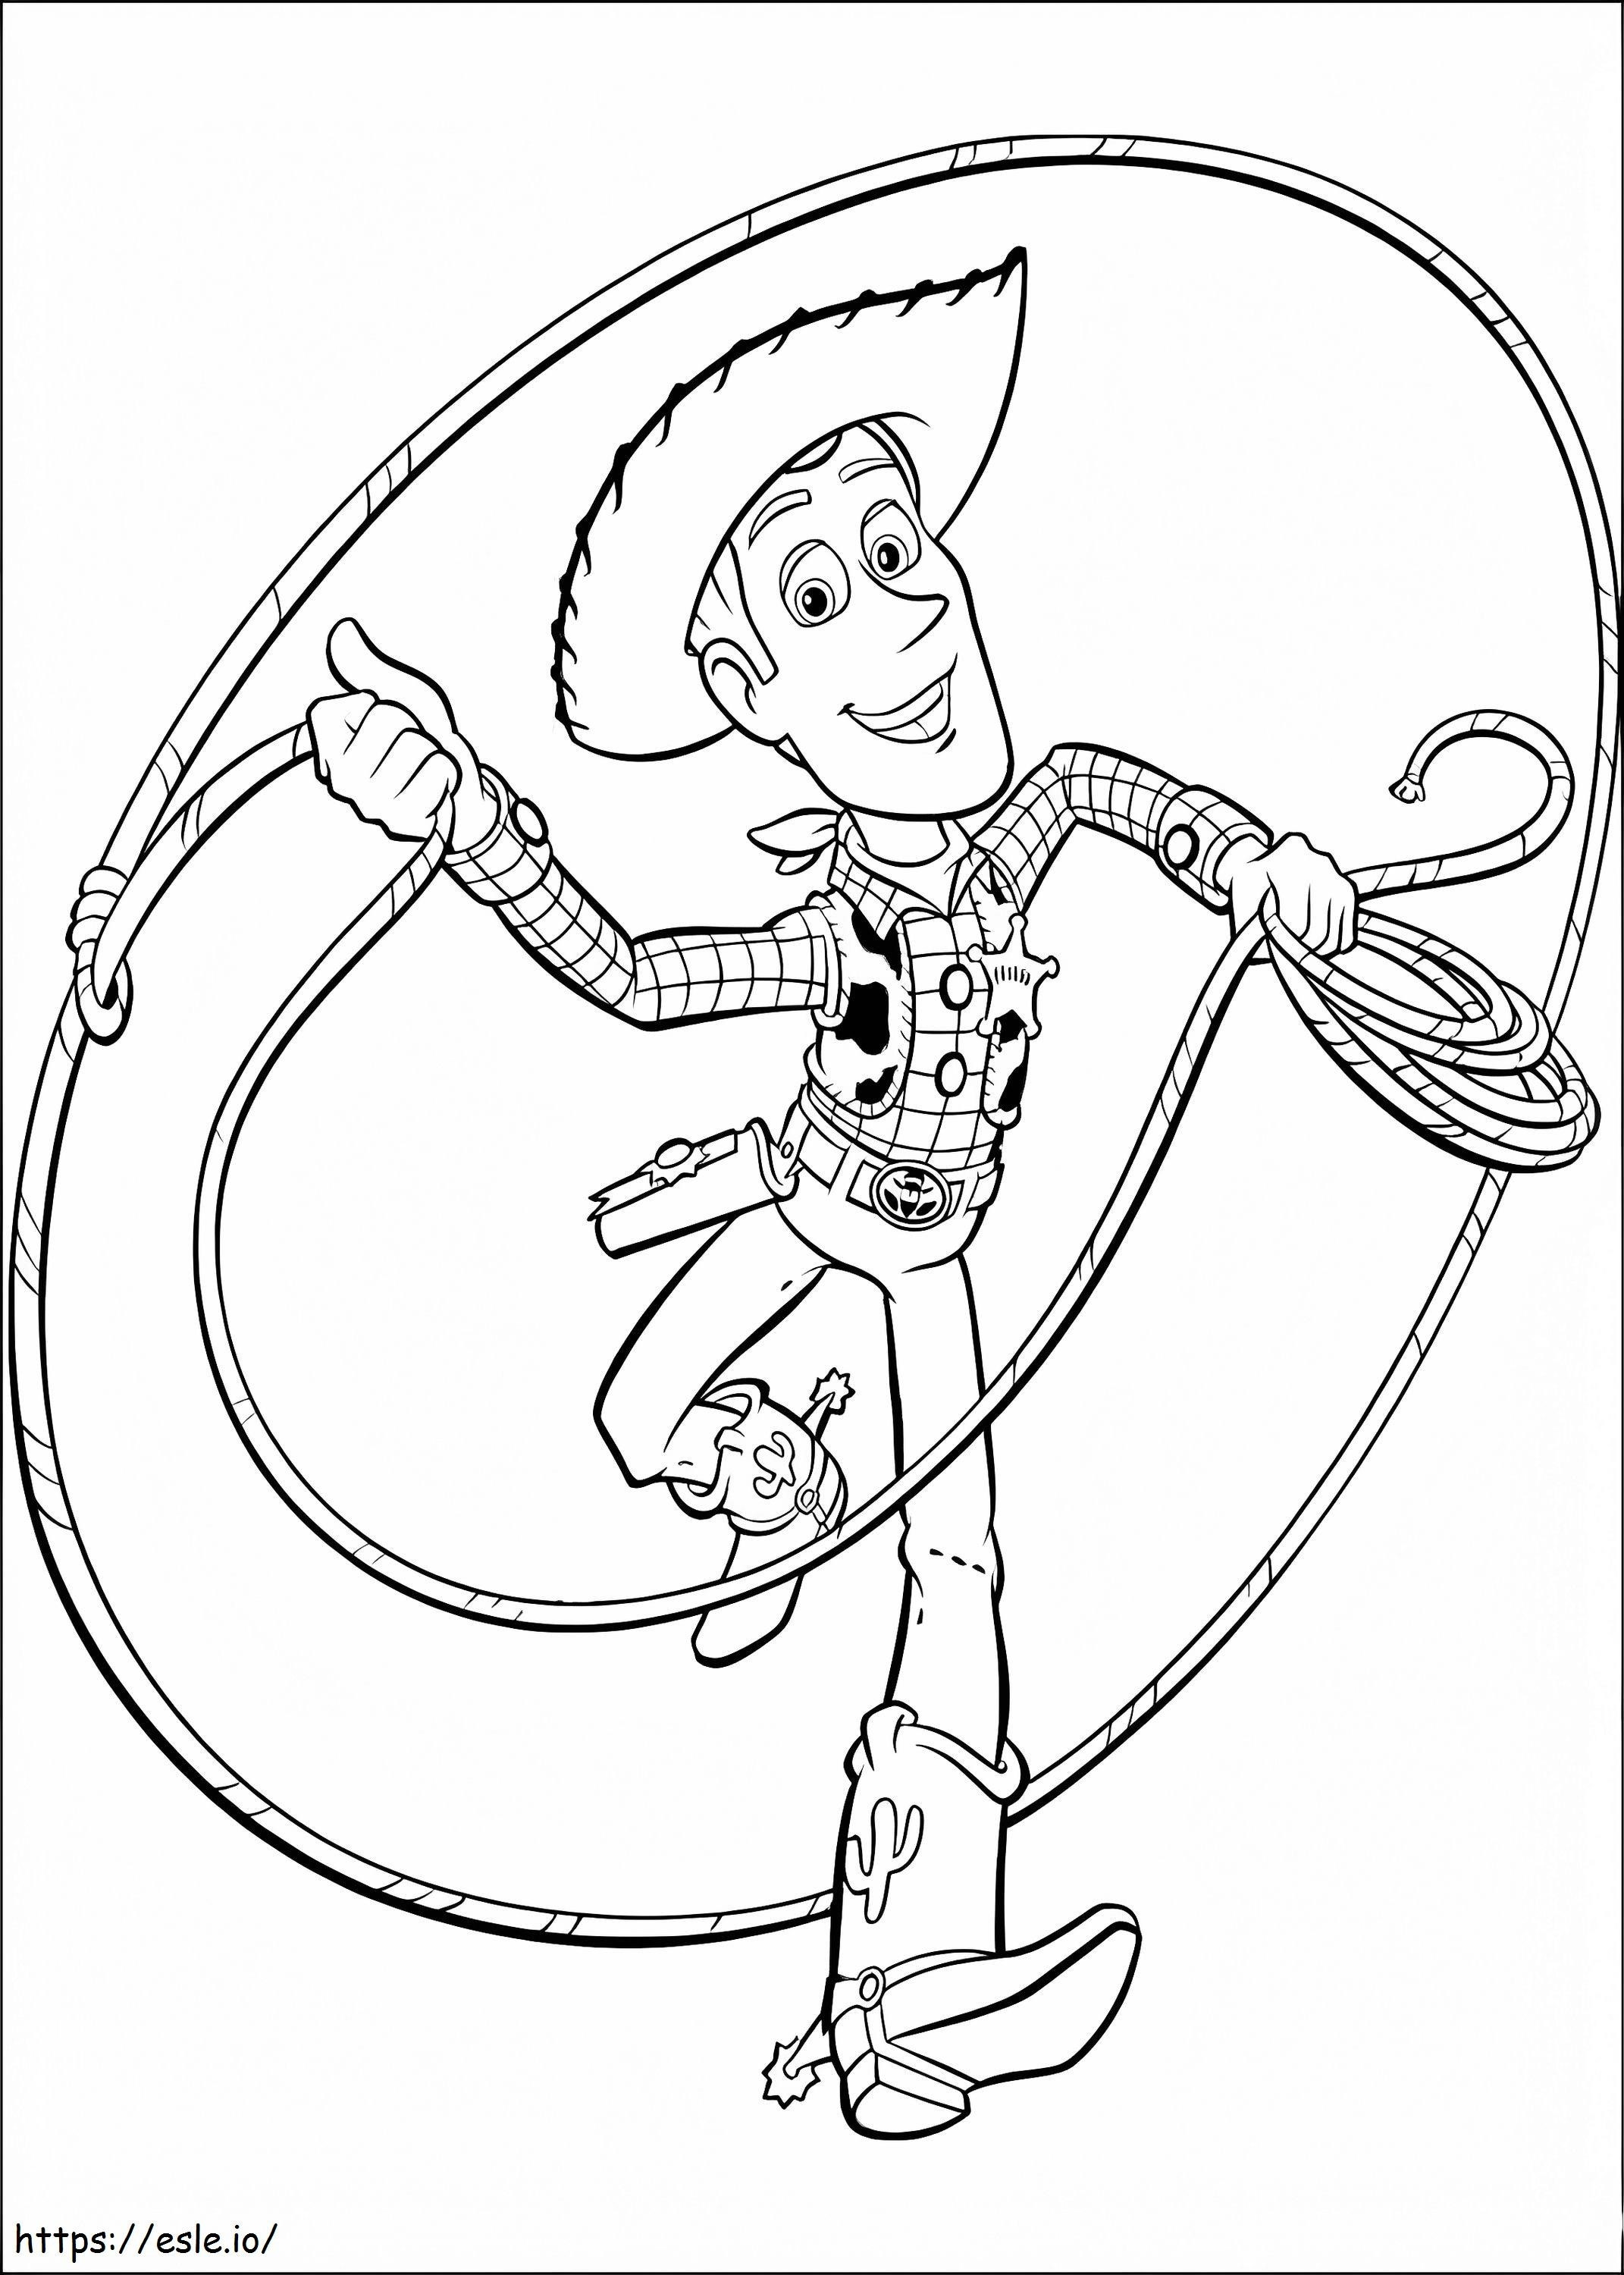 Coloriage Woody De Toy Story 2 à imprimer dessin